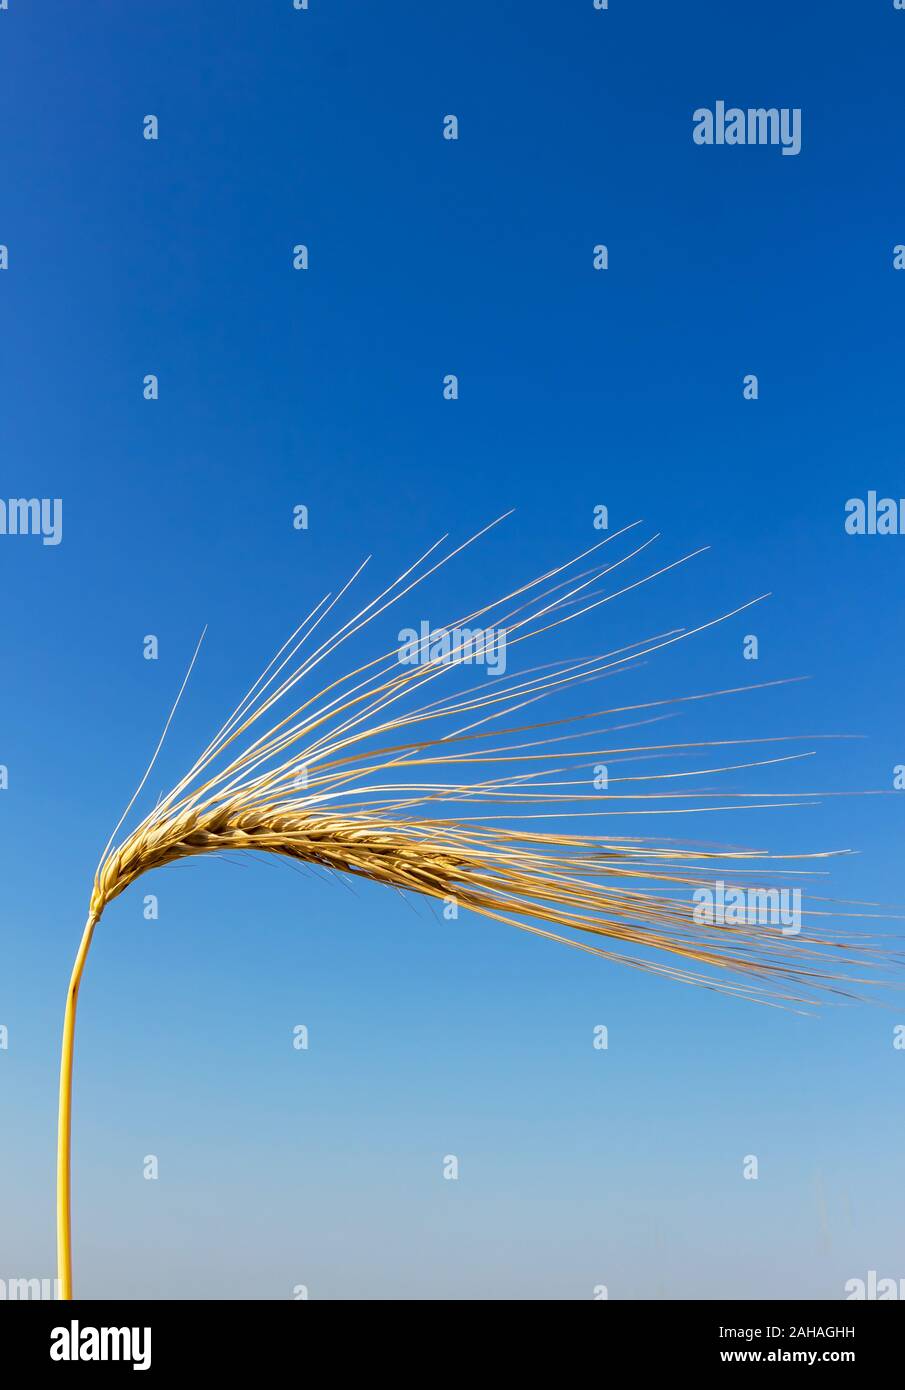 Ein Getreidefeld mit Gerste wartet auf die Ernte. Symbolfoto für Landwirtschaft und gesunde Ernährung. Foto Stock